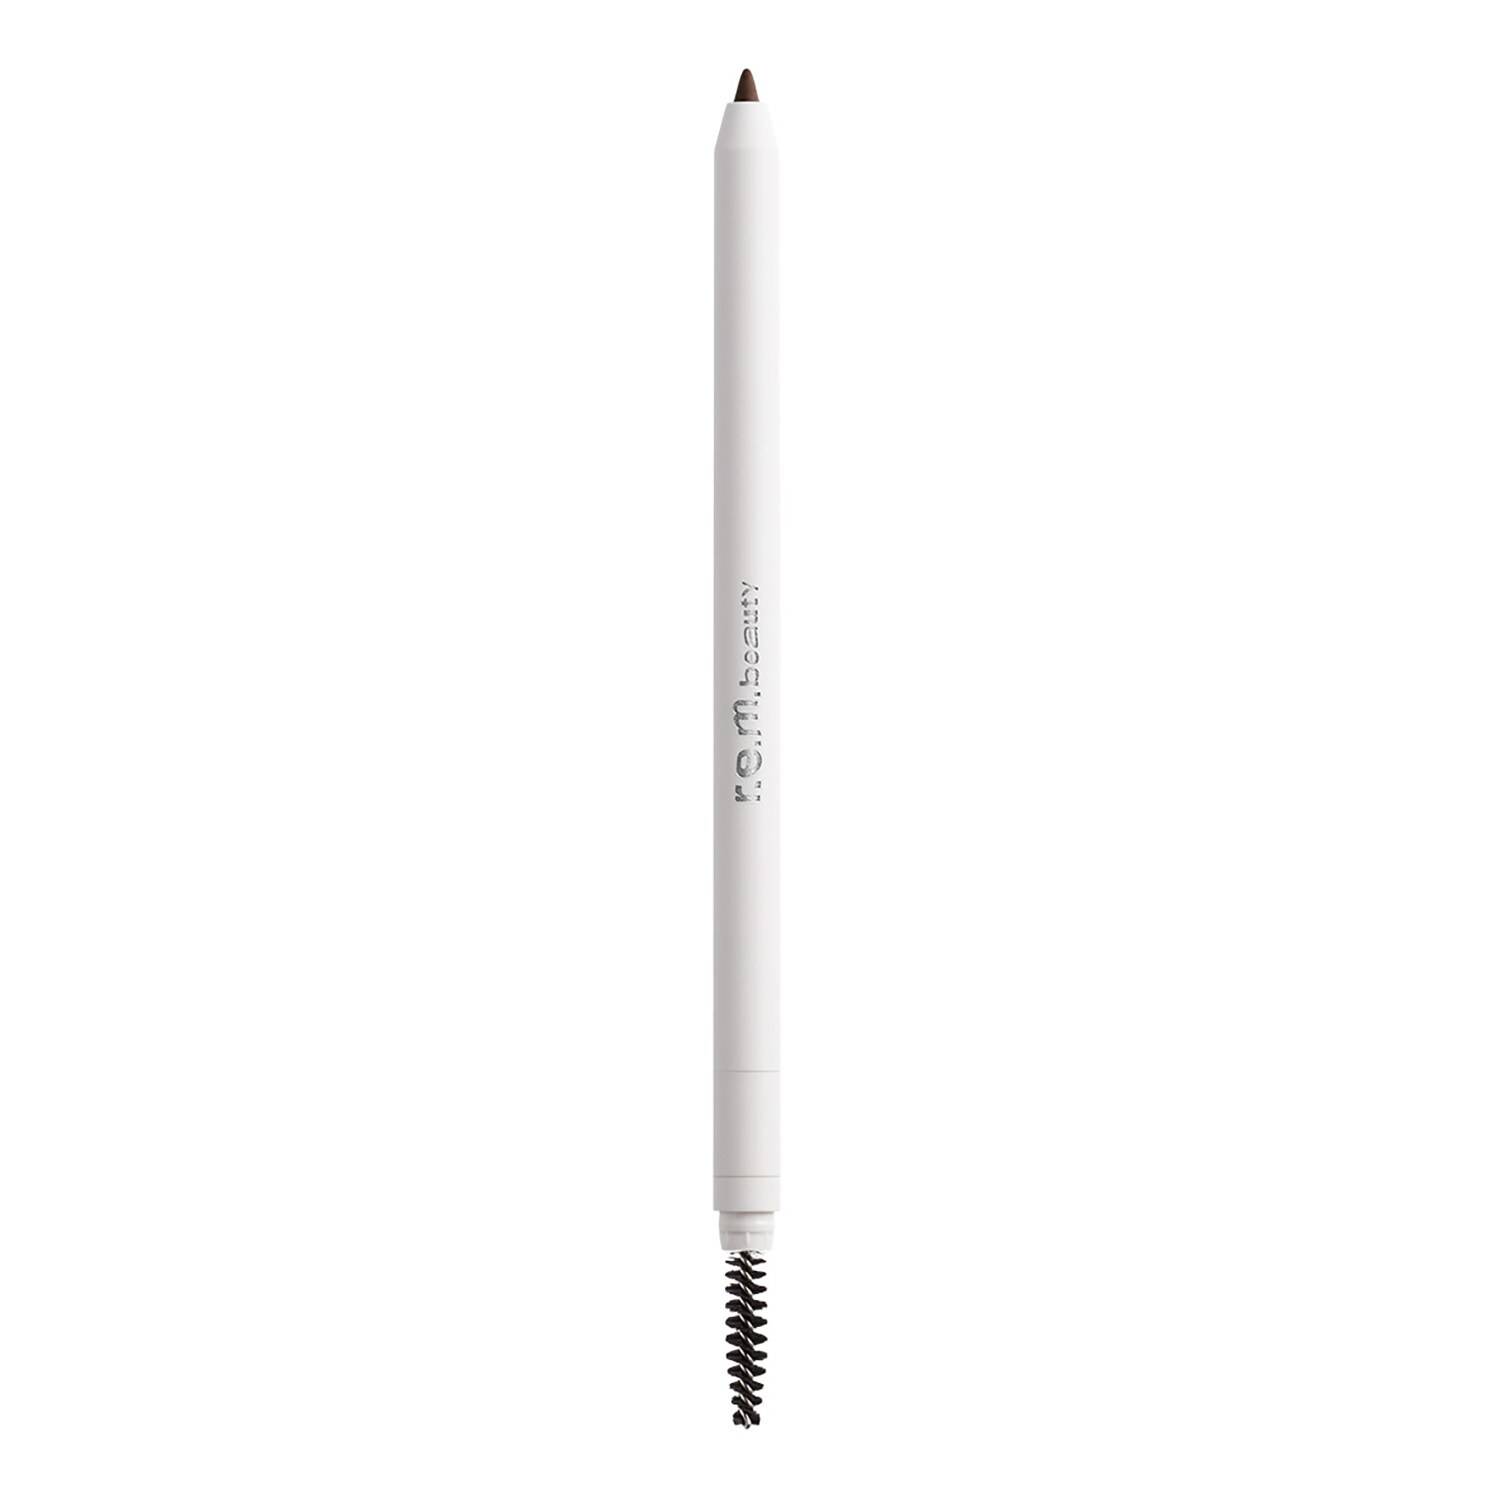 Rem Beauty Space Shape Brow Pencil 0.5G Rich Brown